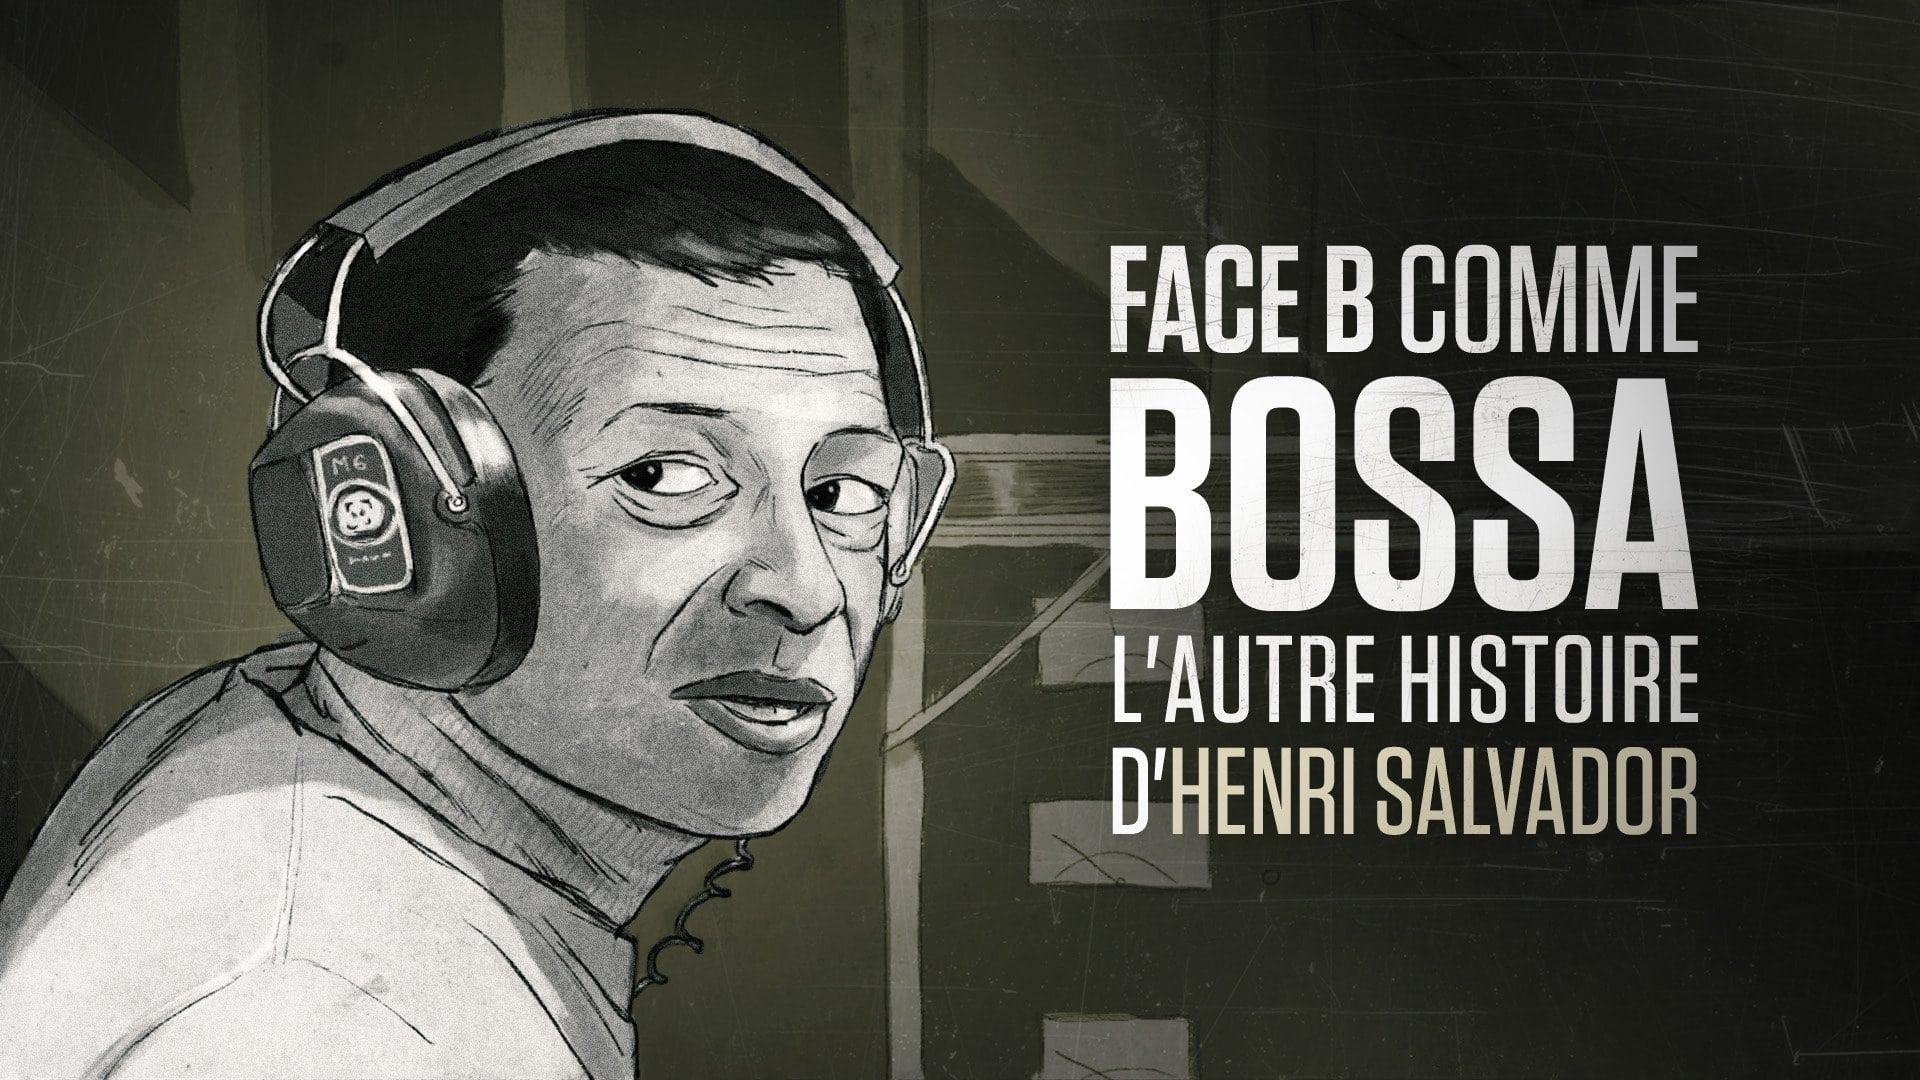 Face B comme bossa, l'autre histoire d'Henri Salvador backdrop